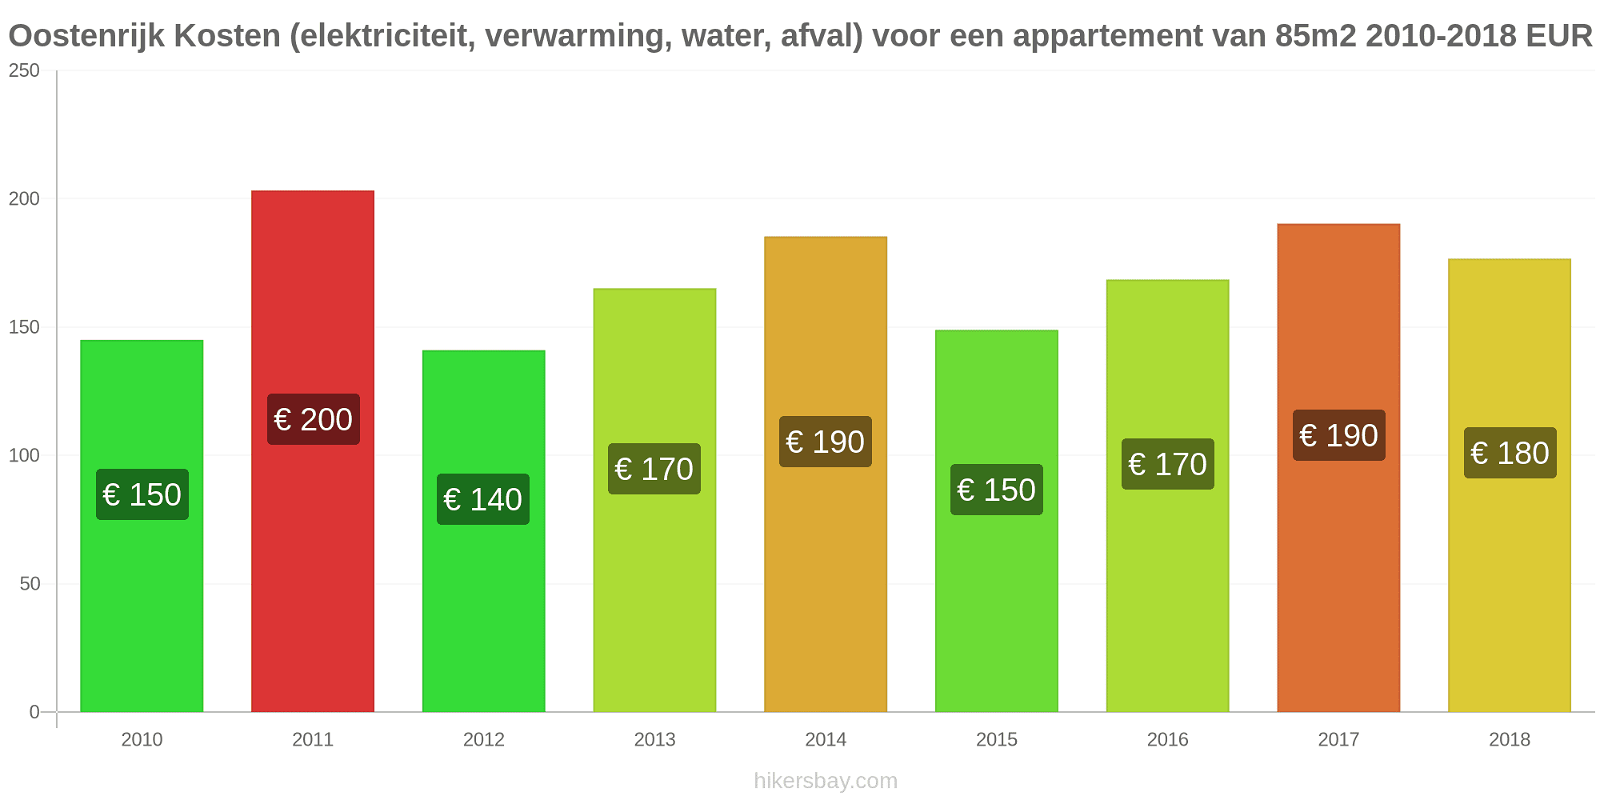 Oostenrijk prijswijzigingen Kosten (elektriciteit, verwarming, water, vuilnis) voor een appartement van 85m2 hikersbay.com